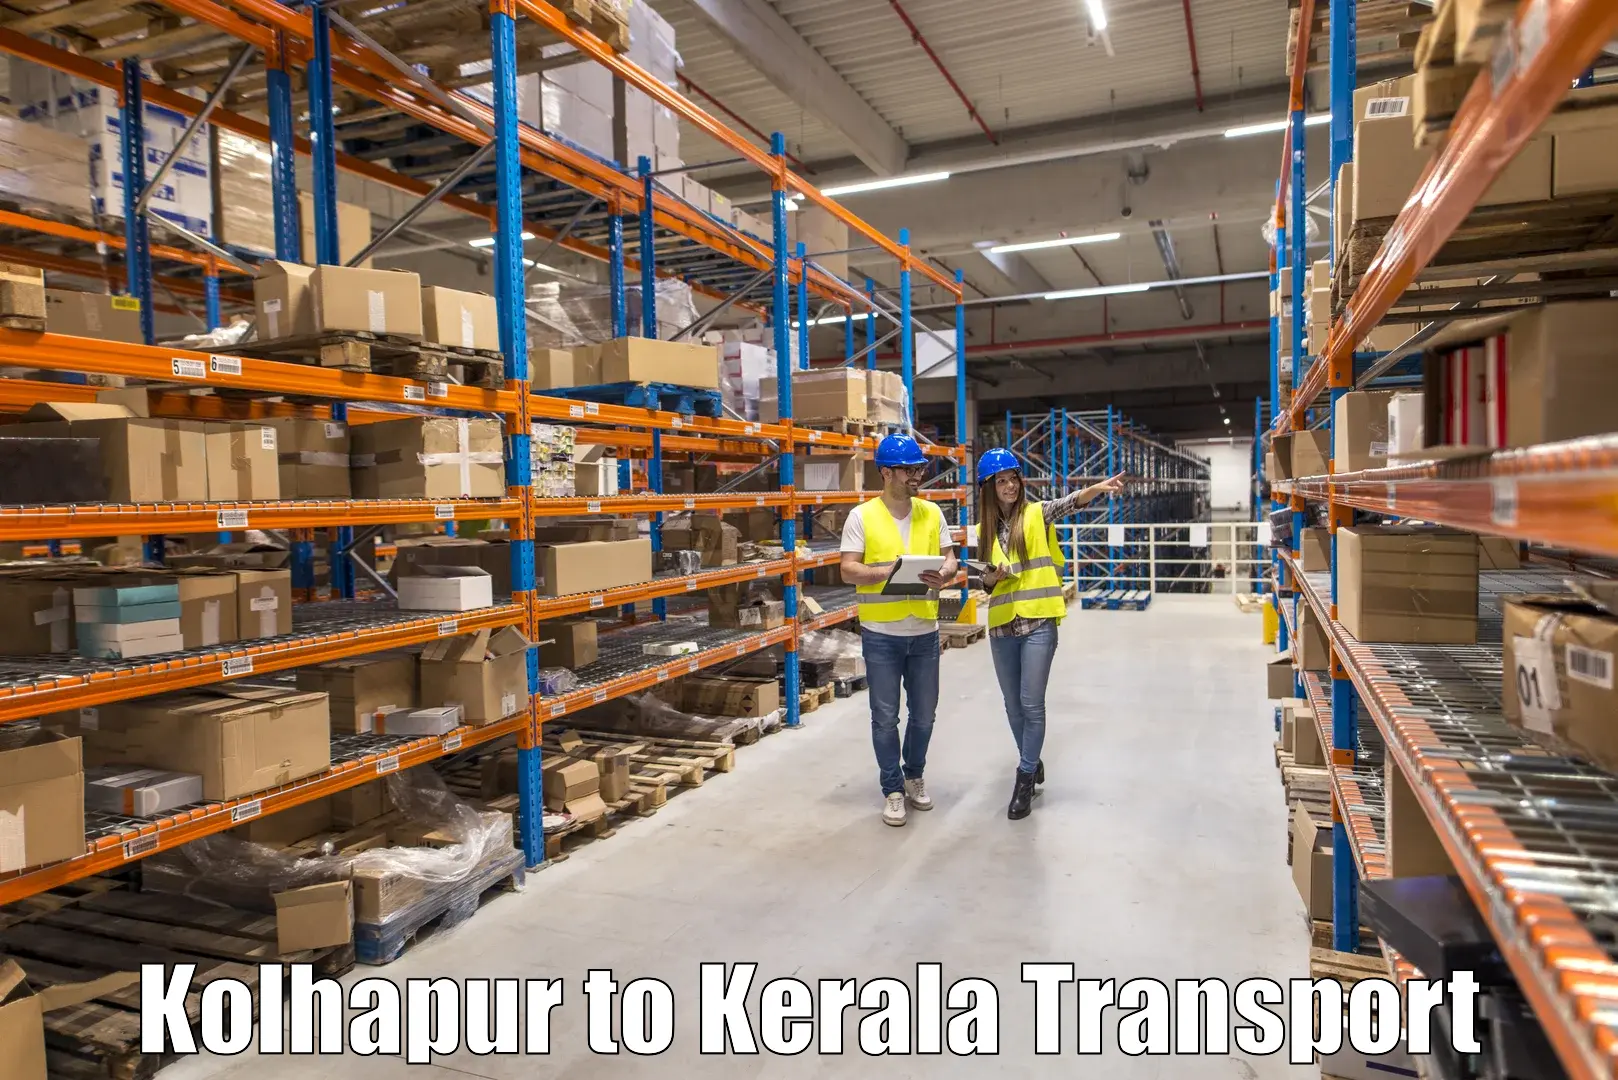 Express transport services Kolhapur to Idukki